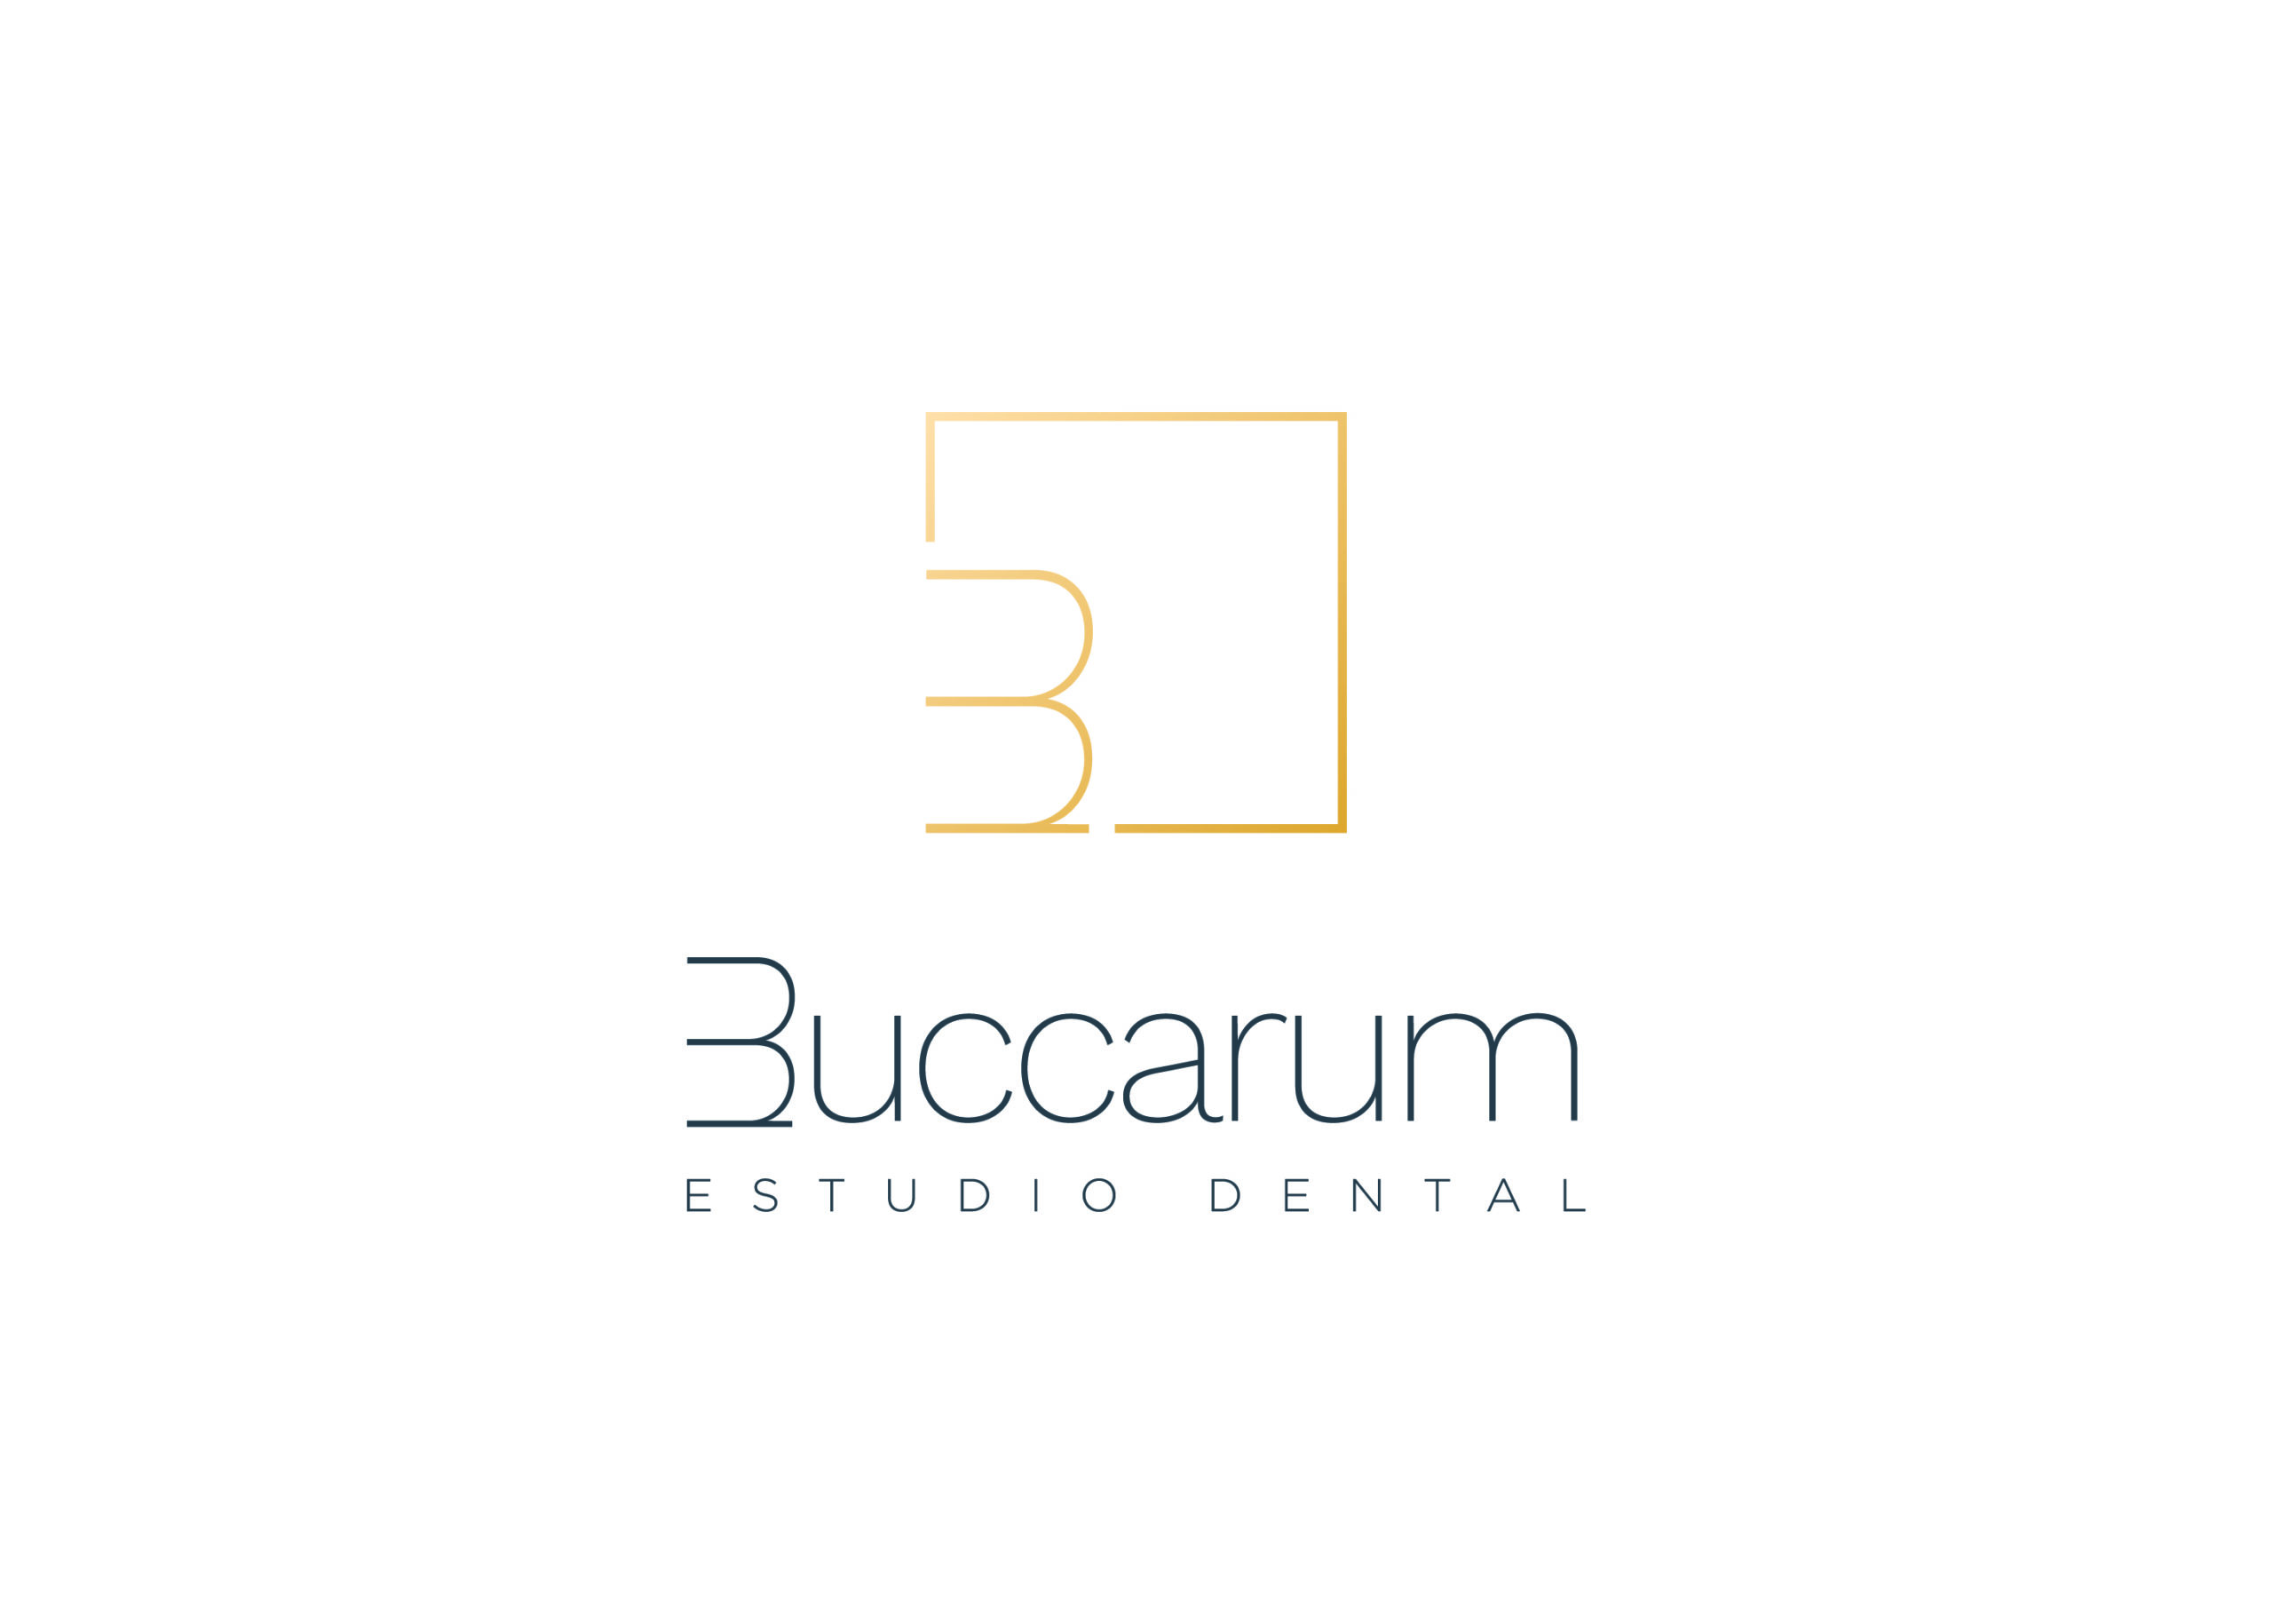 Buccarum Estudio Dental